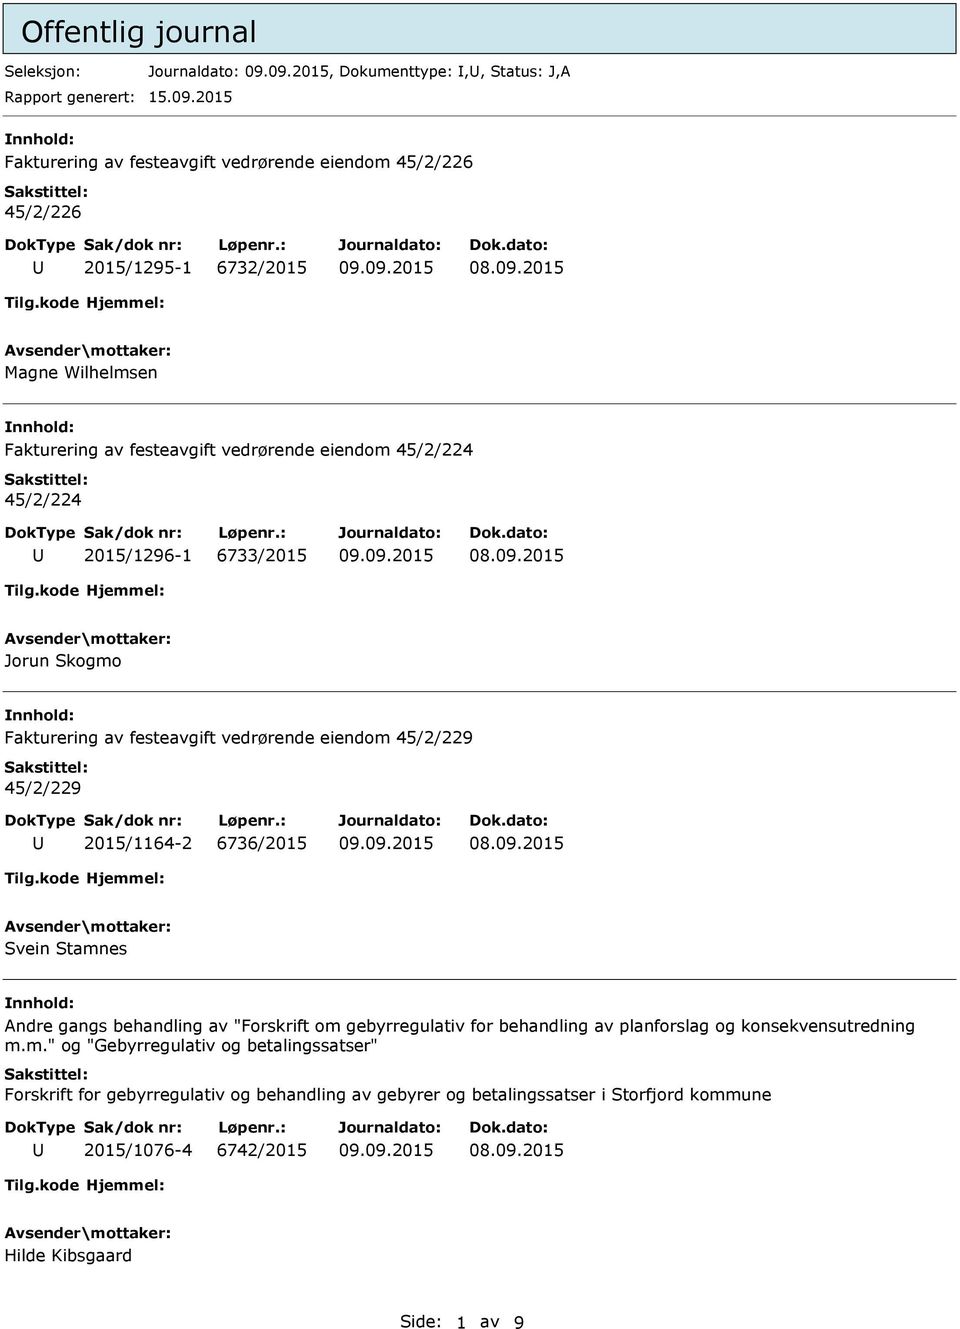 2015/1296-1 6733/2015 Jorun Skogmo Fakturering av festeavgift vedrørende eiendom 45/2/229 45/2/229 2015/1164-2 6736/2015 Svein Stamnes Andre gangs behandling av "Forskrift